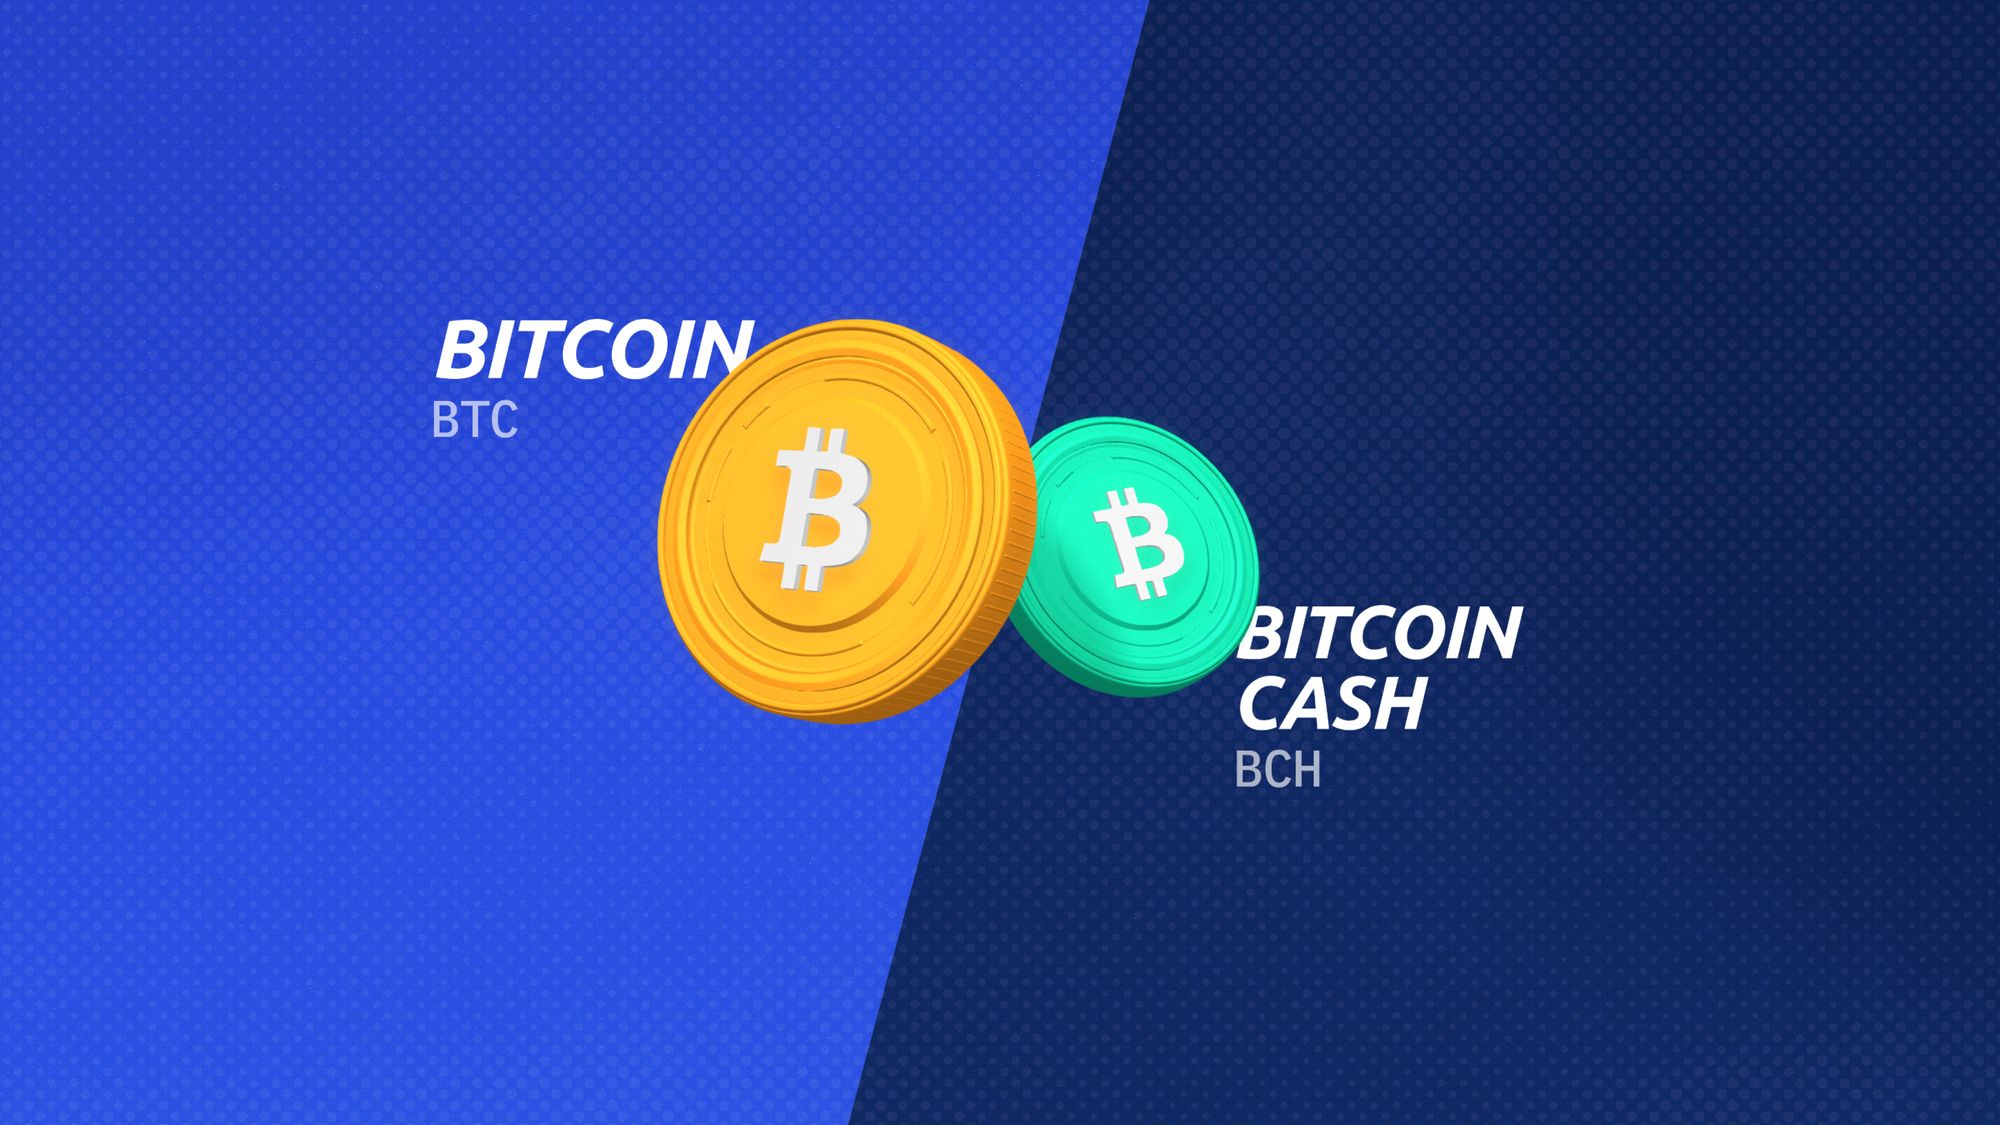 Bitcoin (BTC) vs Bitcoin Cash (BCH): Utforska skillnaderna i ursprung, användningsfall och investeringspotential